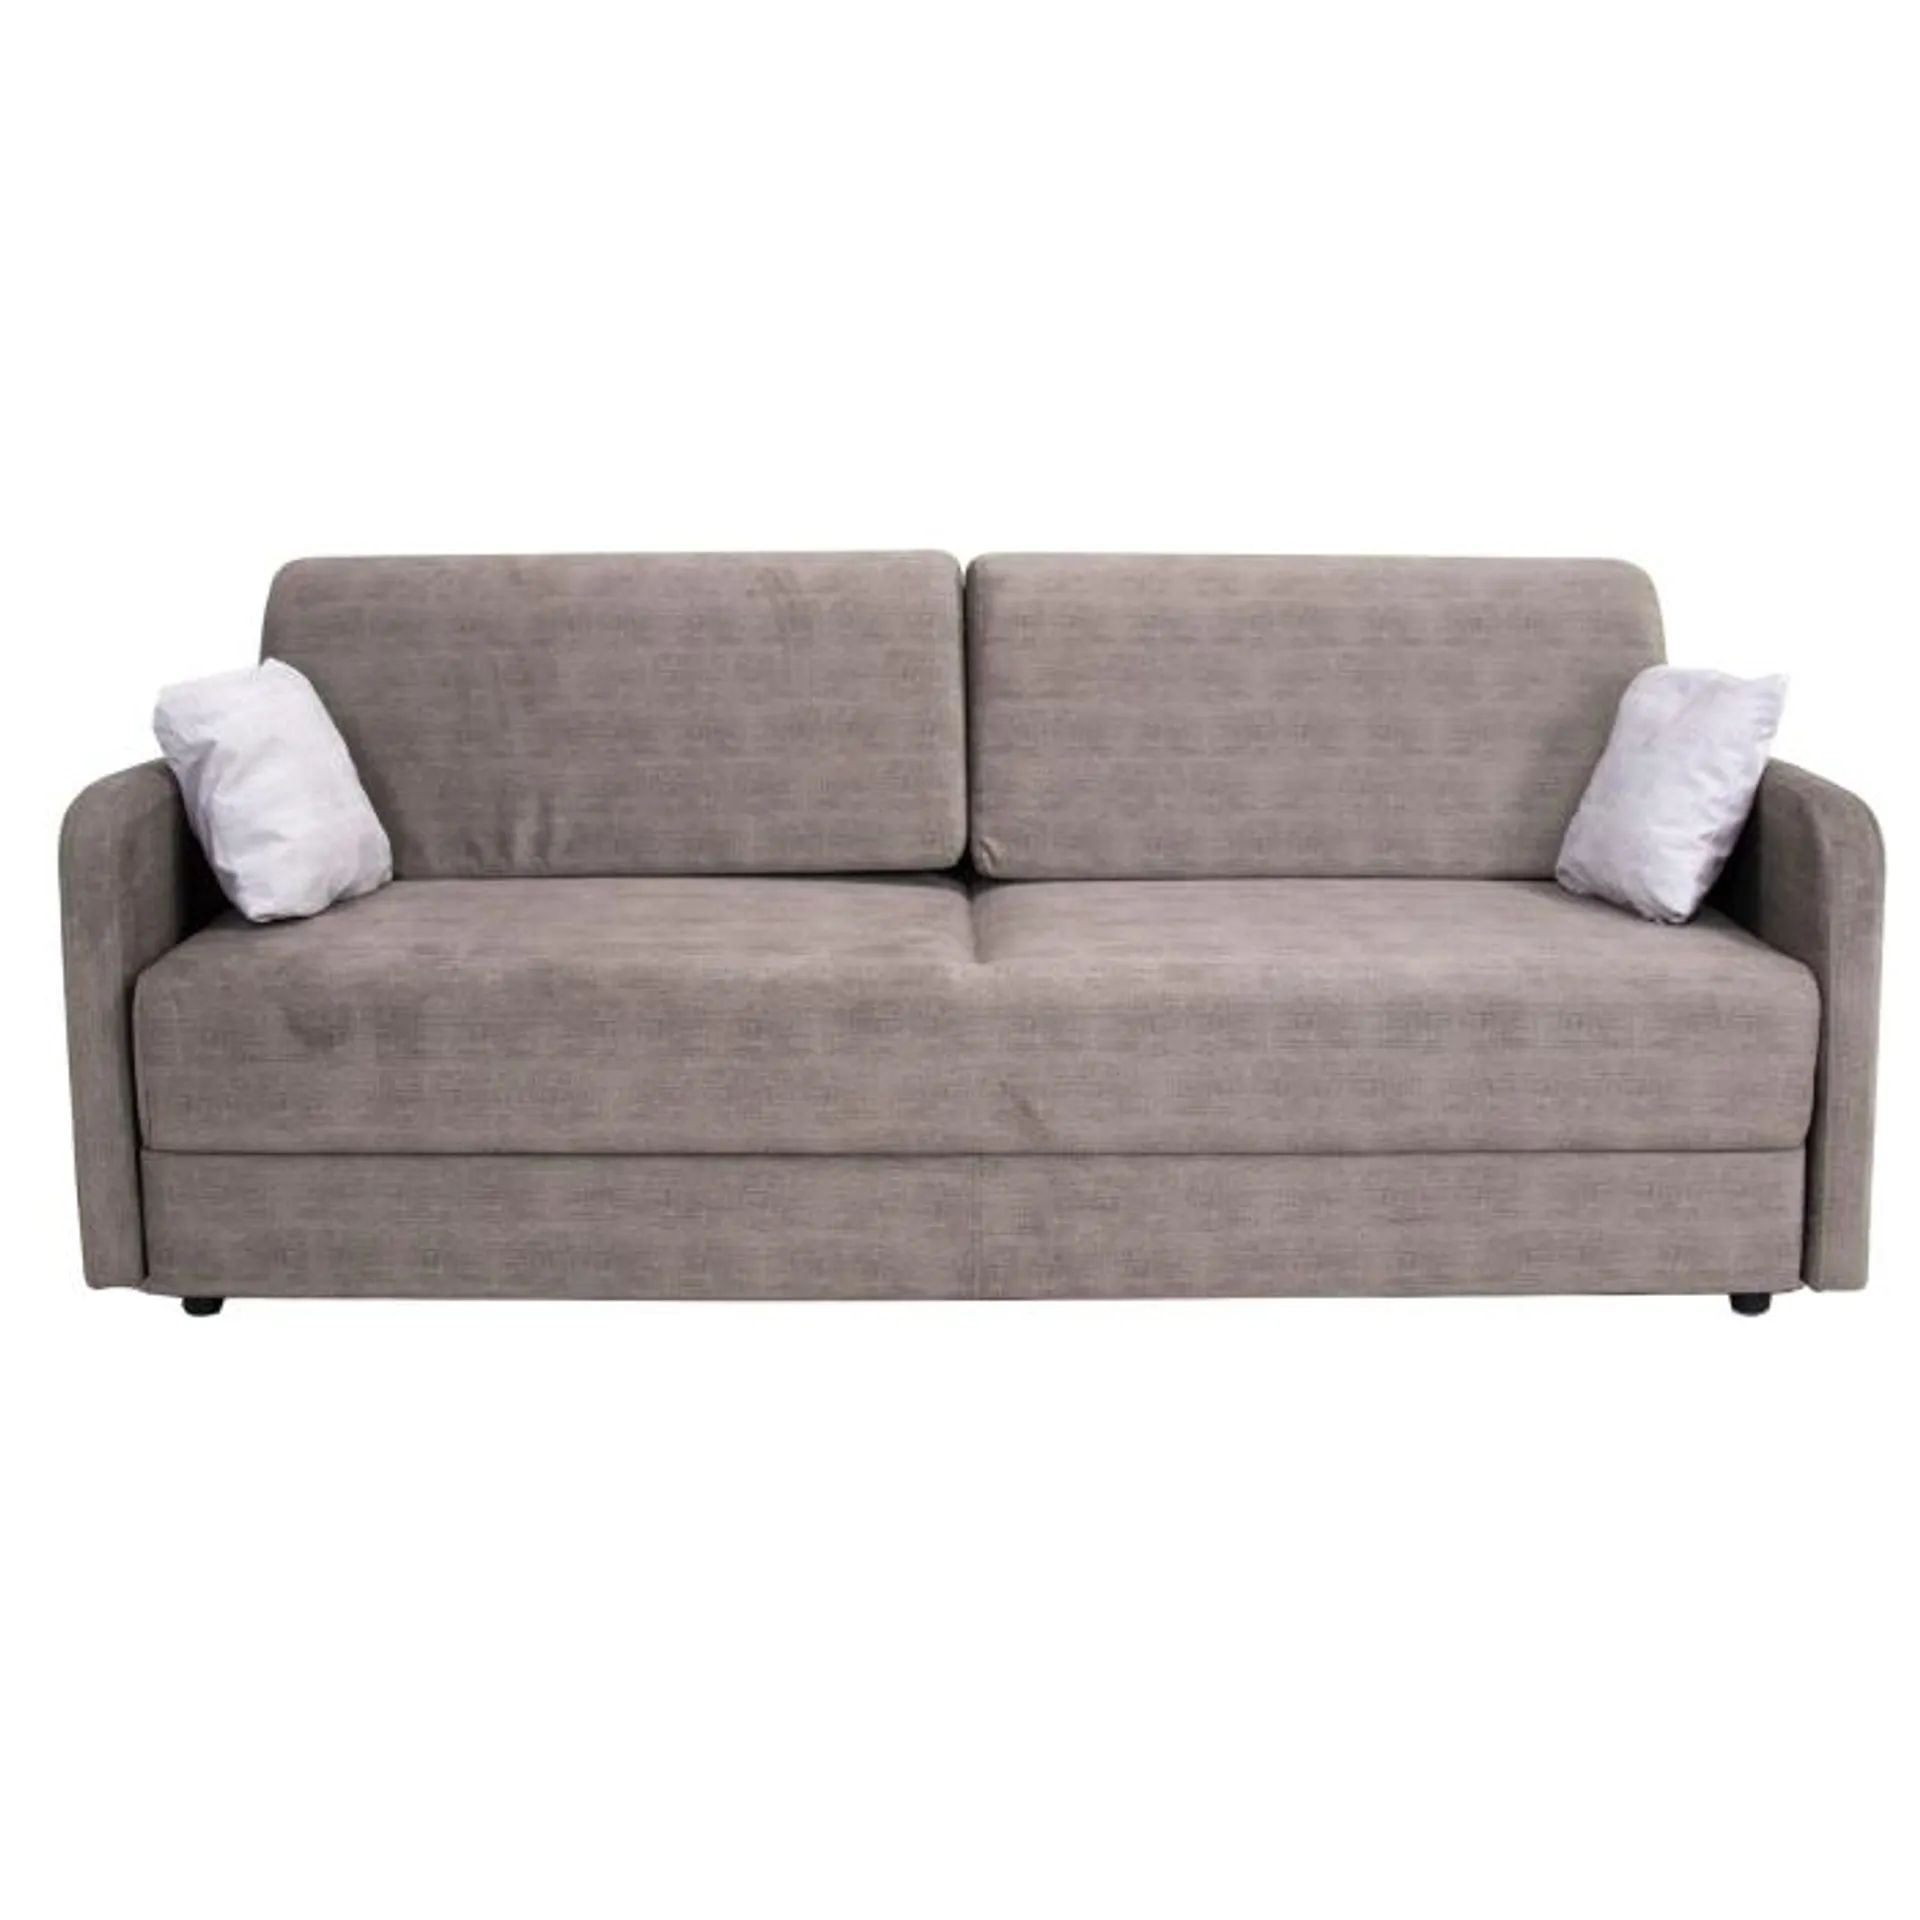 Sofa rozkładana KXMIL beżowa 205x100 cm